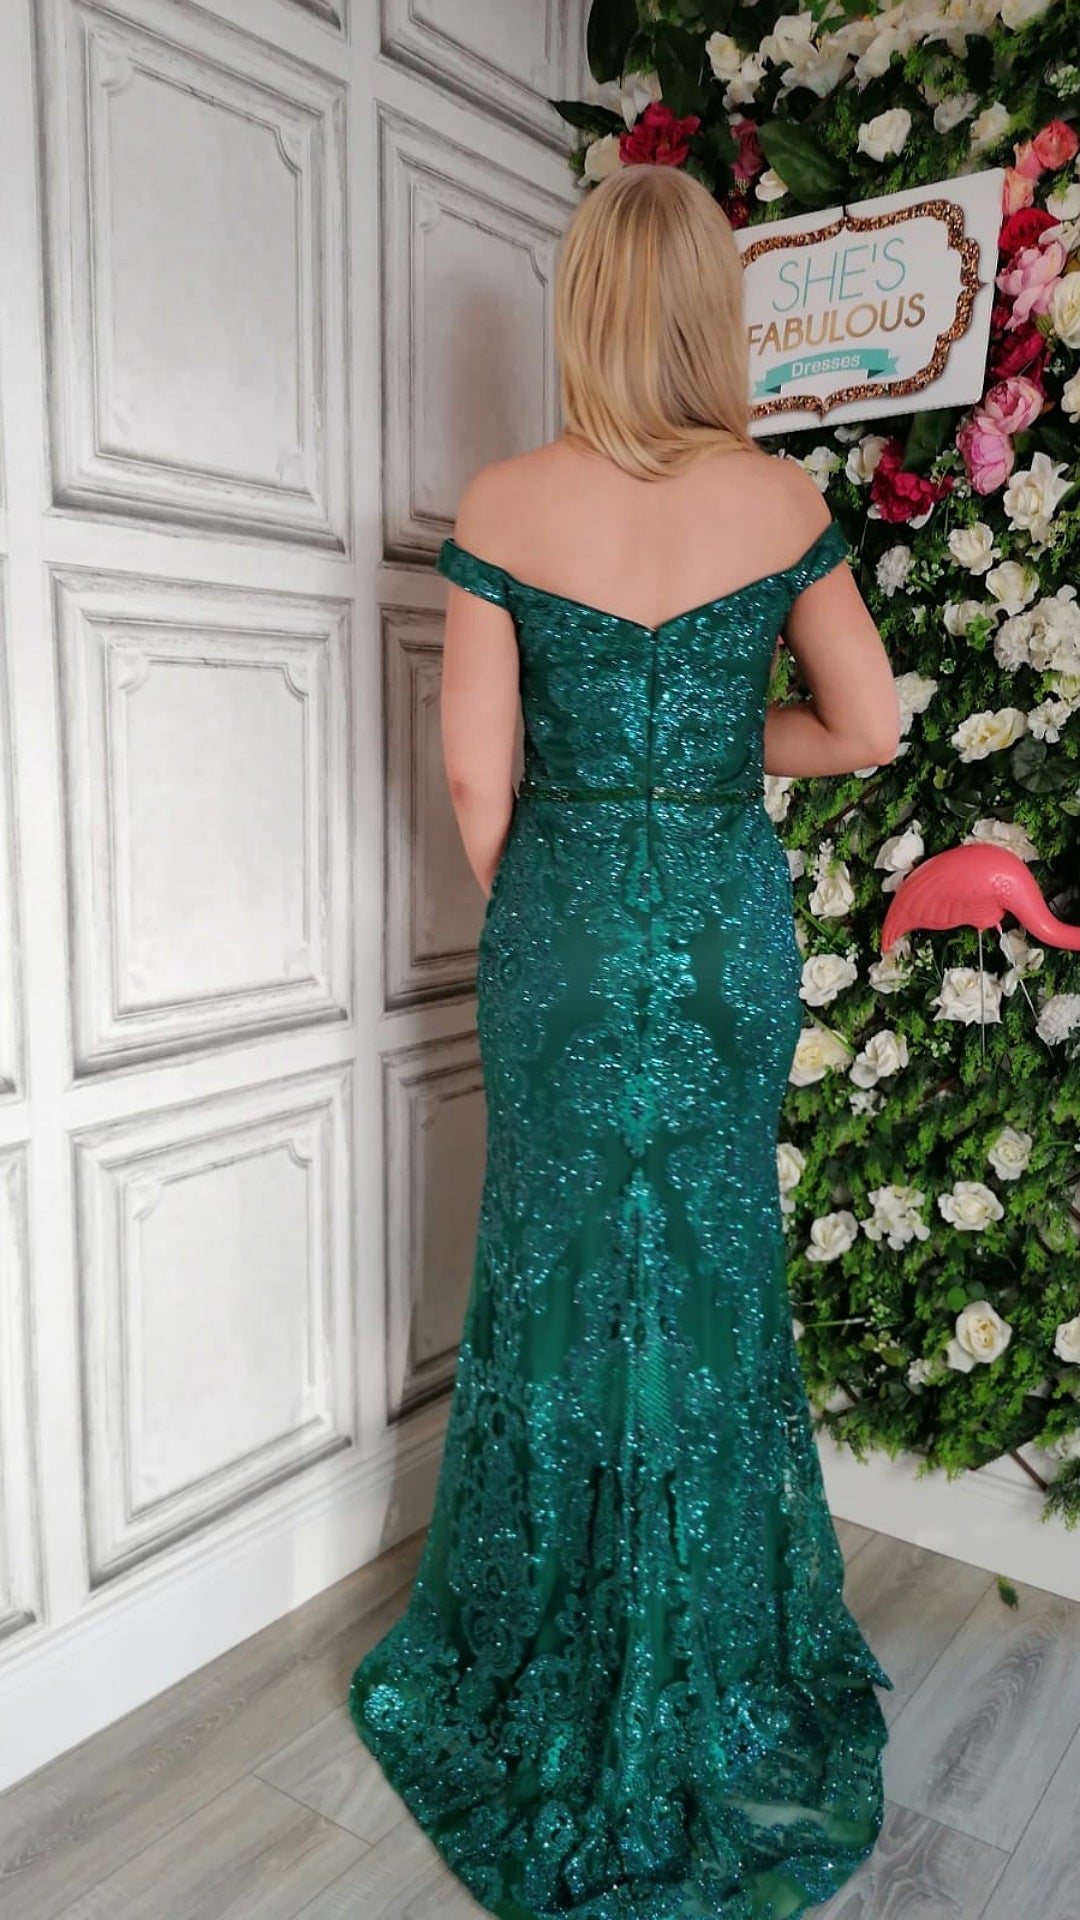 Victoria Emerald Green Off Shoulder Glitter Embellished Formal Prom Dress